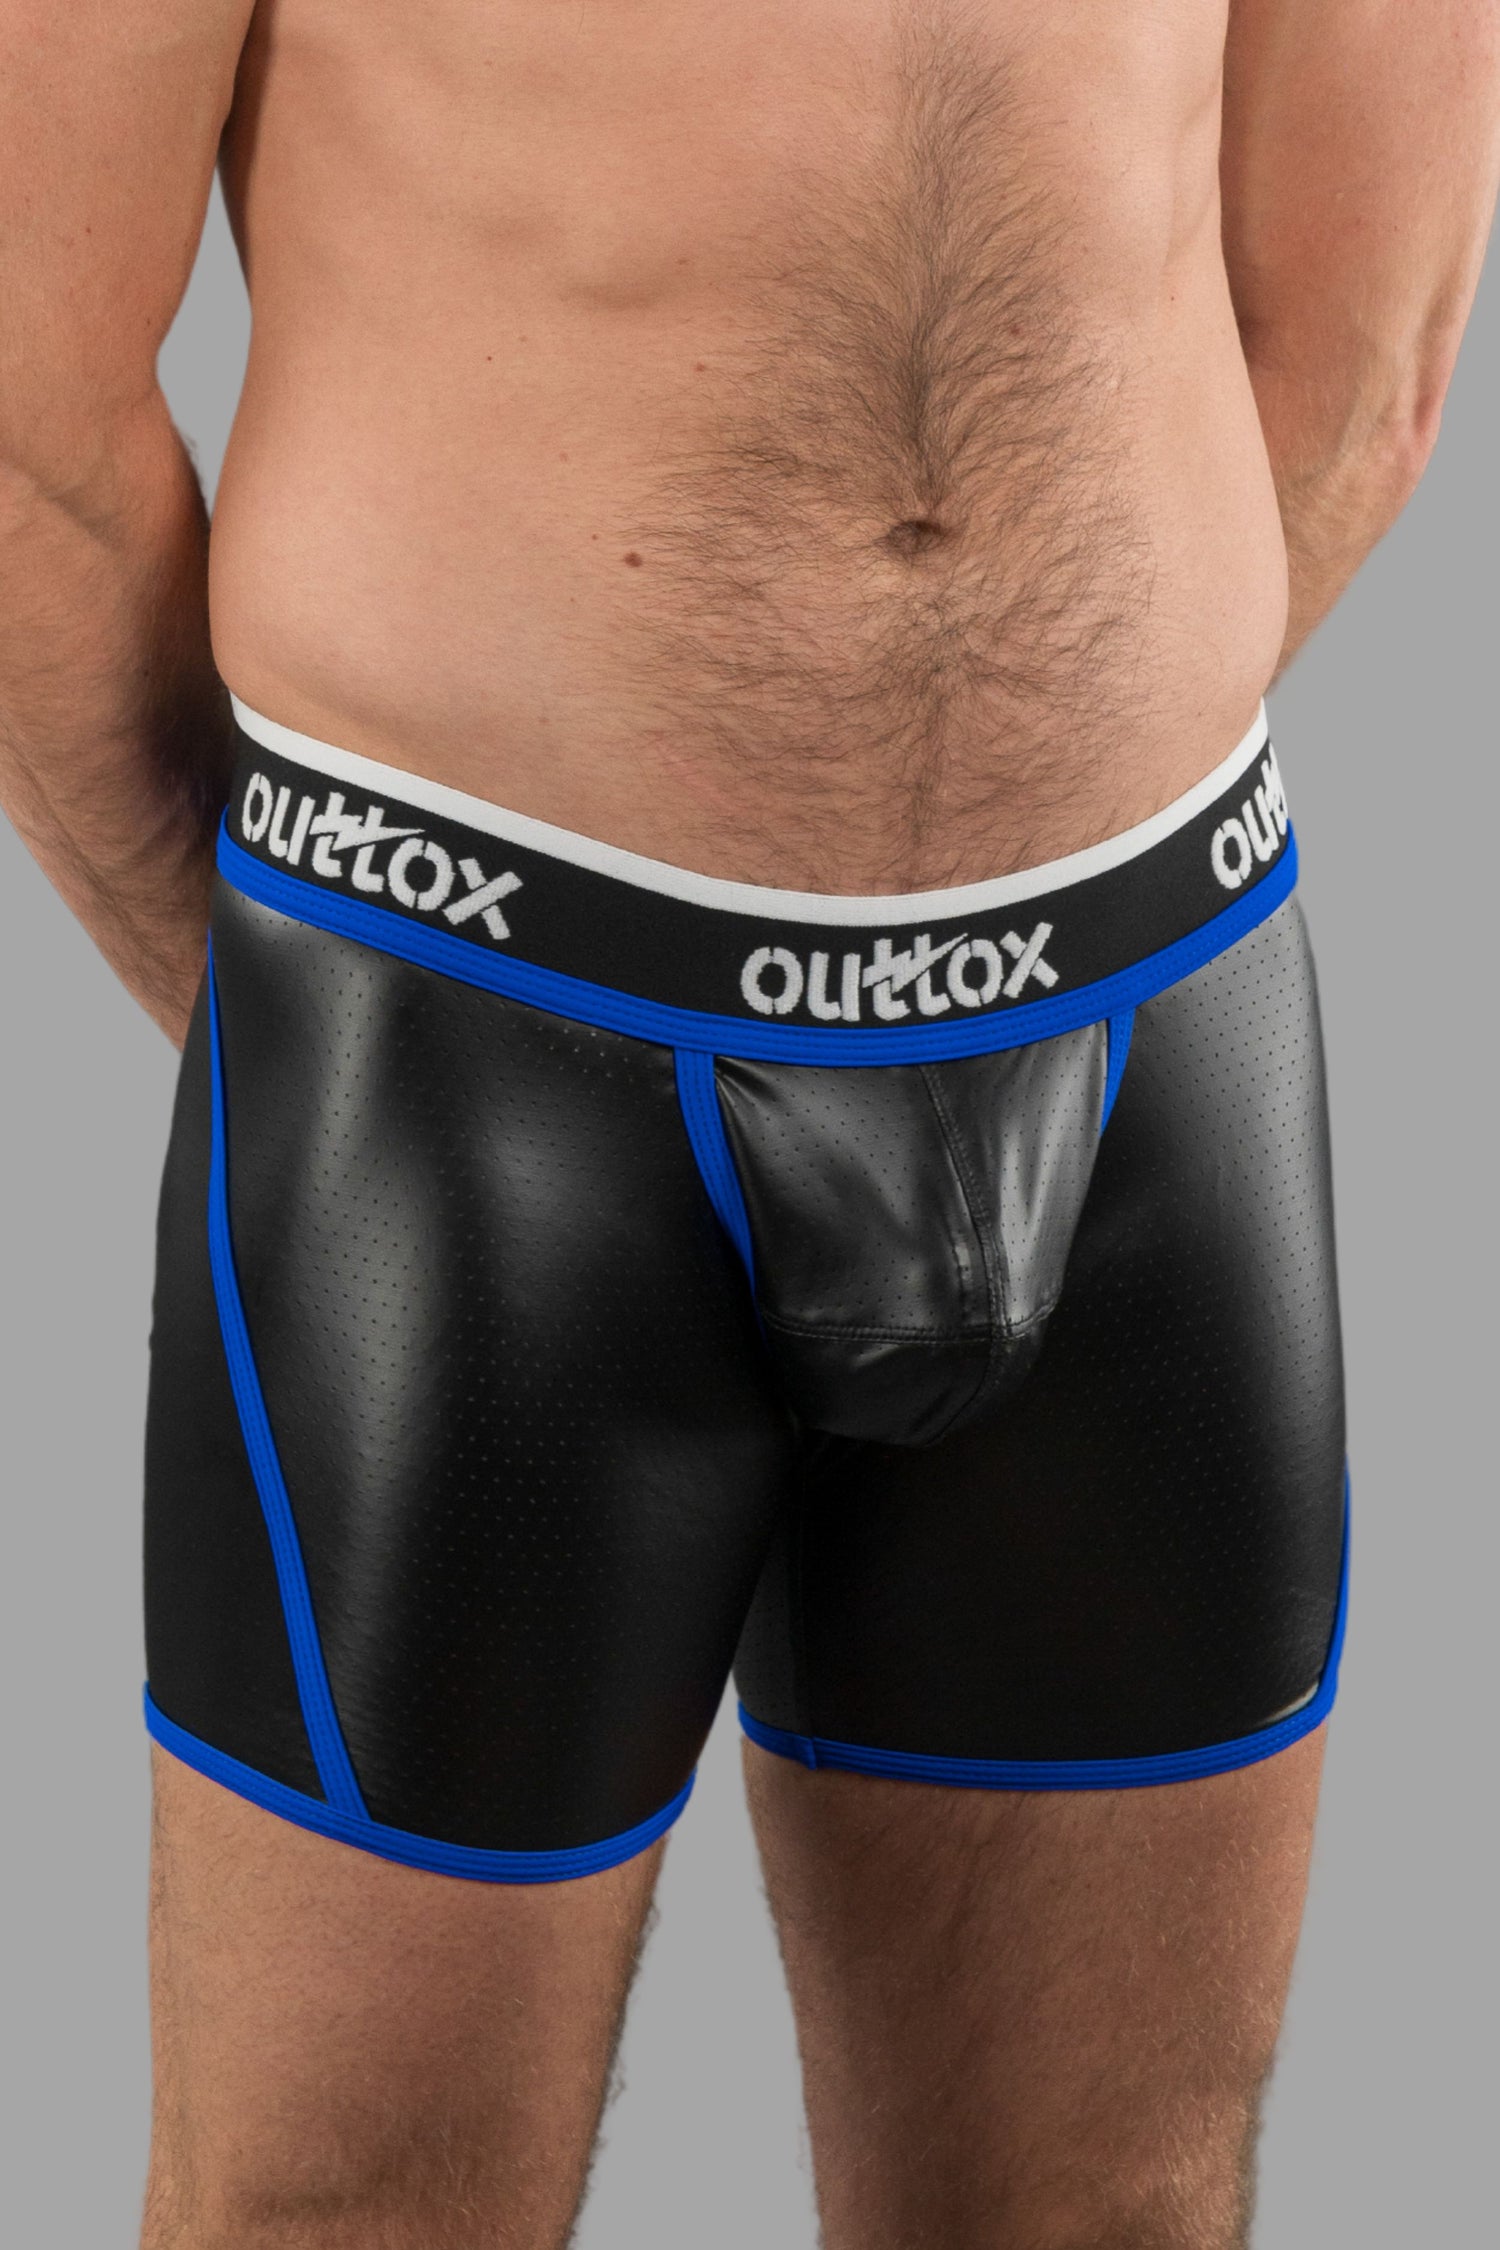 Outtox. Pantalones cortos traseros abiertos con bragueta a presión. Negro+Azul &